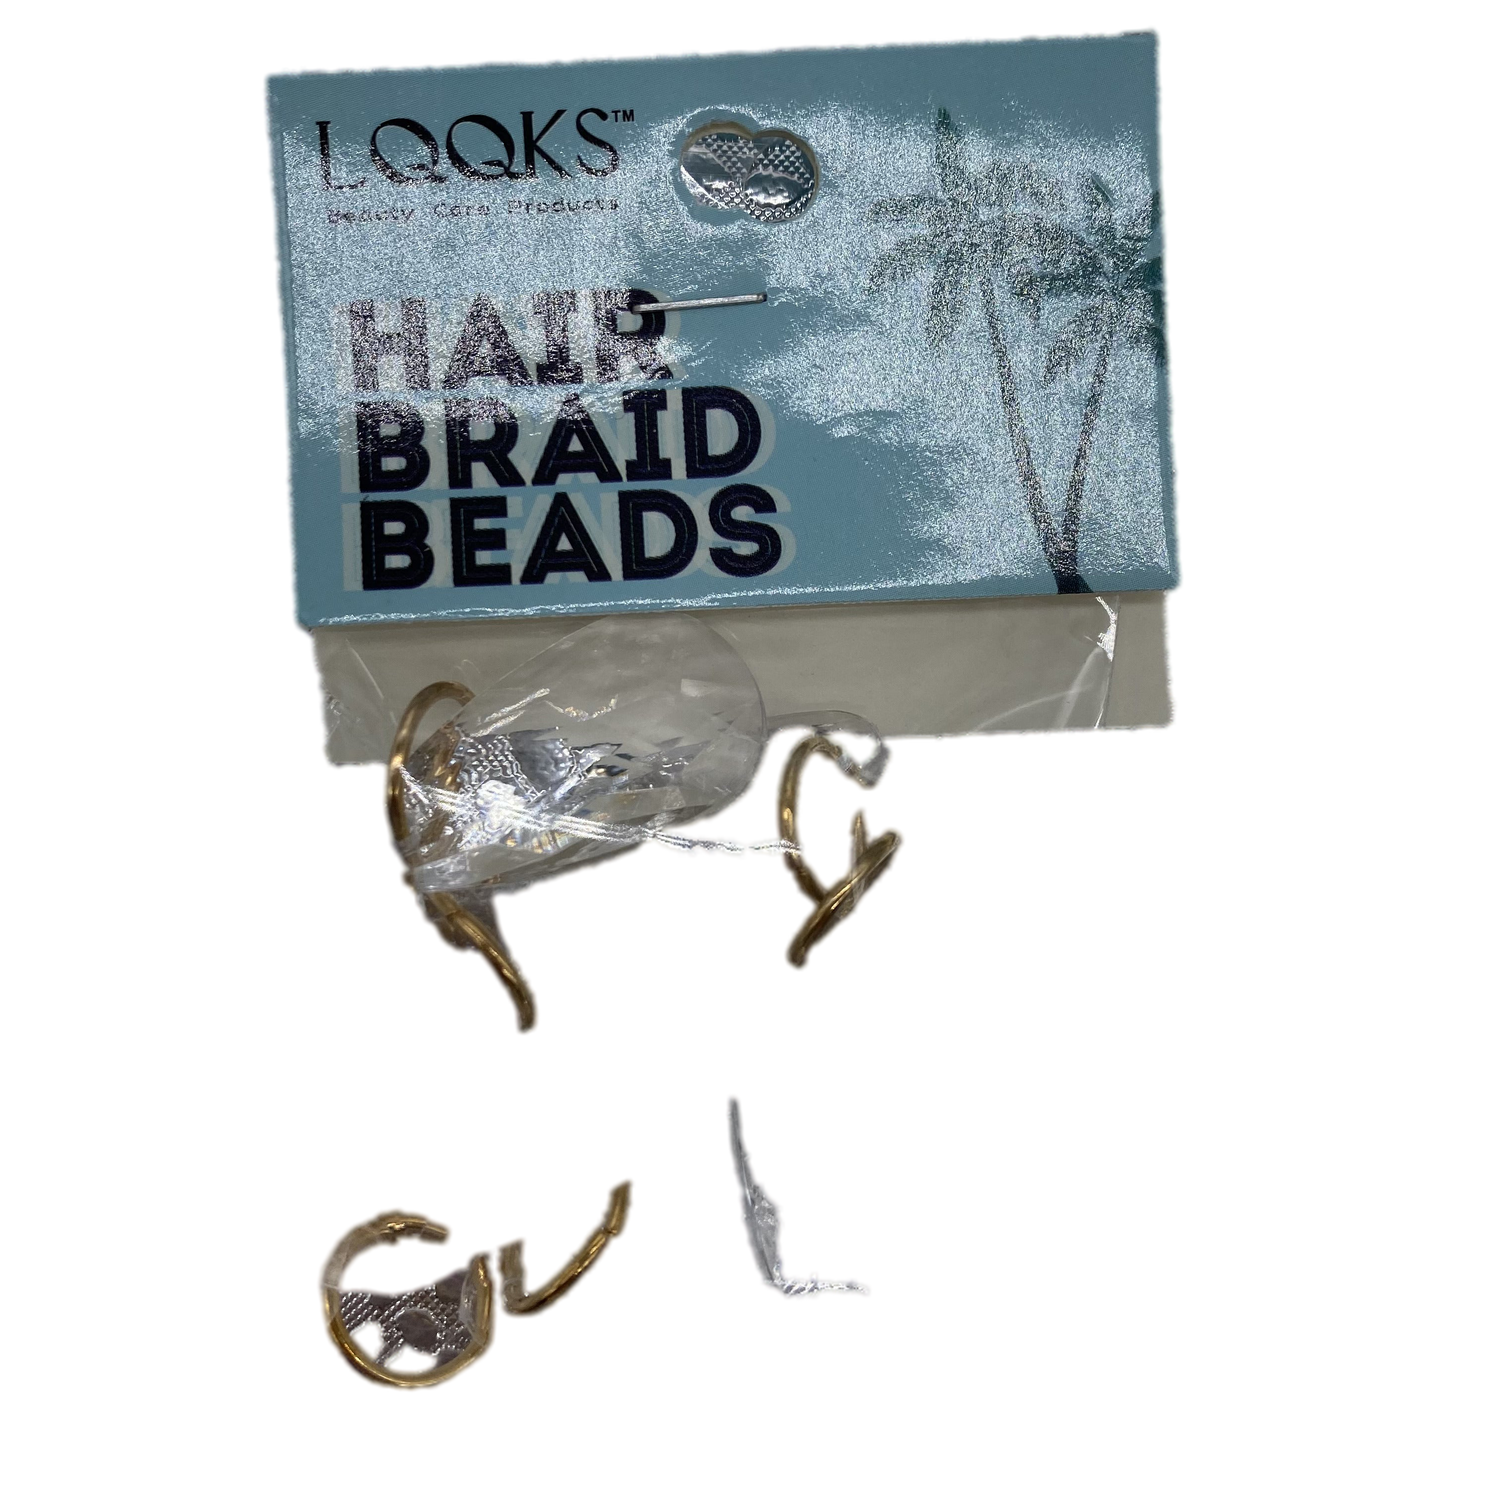 LQQKS Hair Braid Beads - VIP Extensions